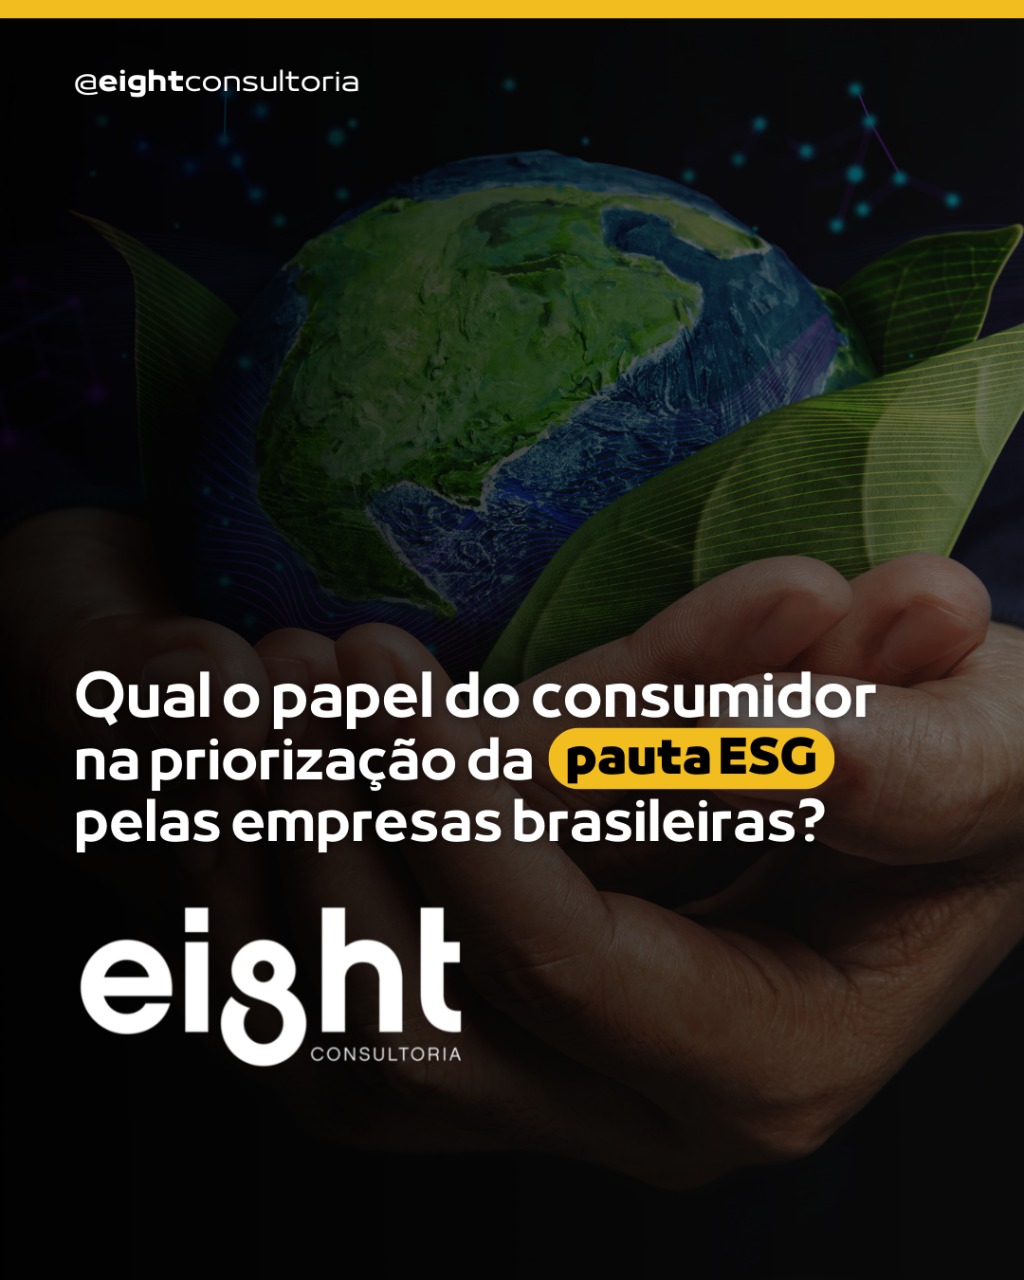 Qual o papel do consumidor na priorização da pauta ESC pelas empresas brasileiras?